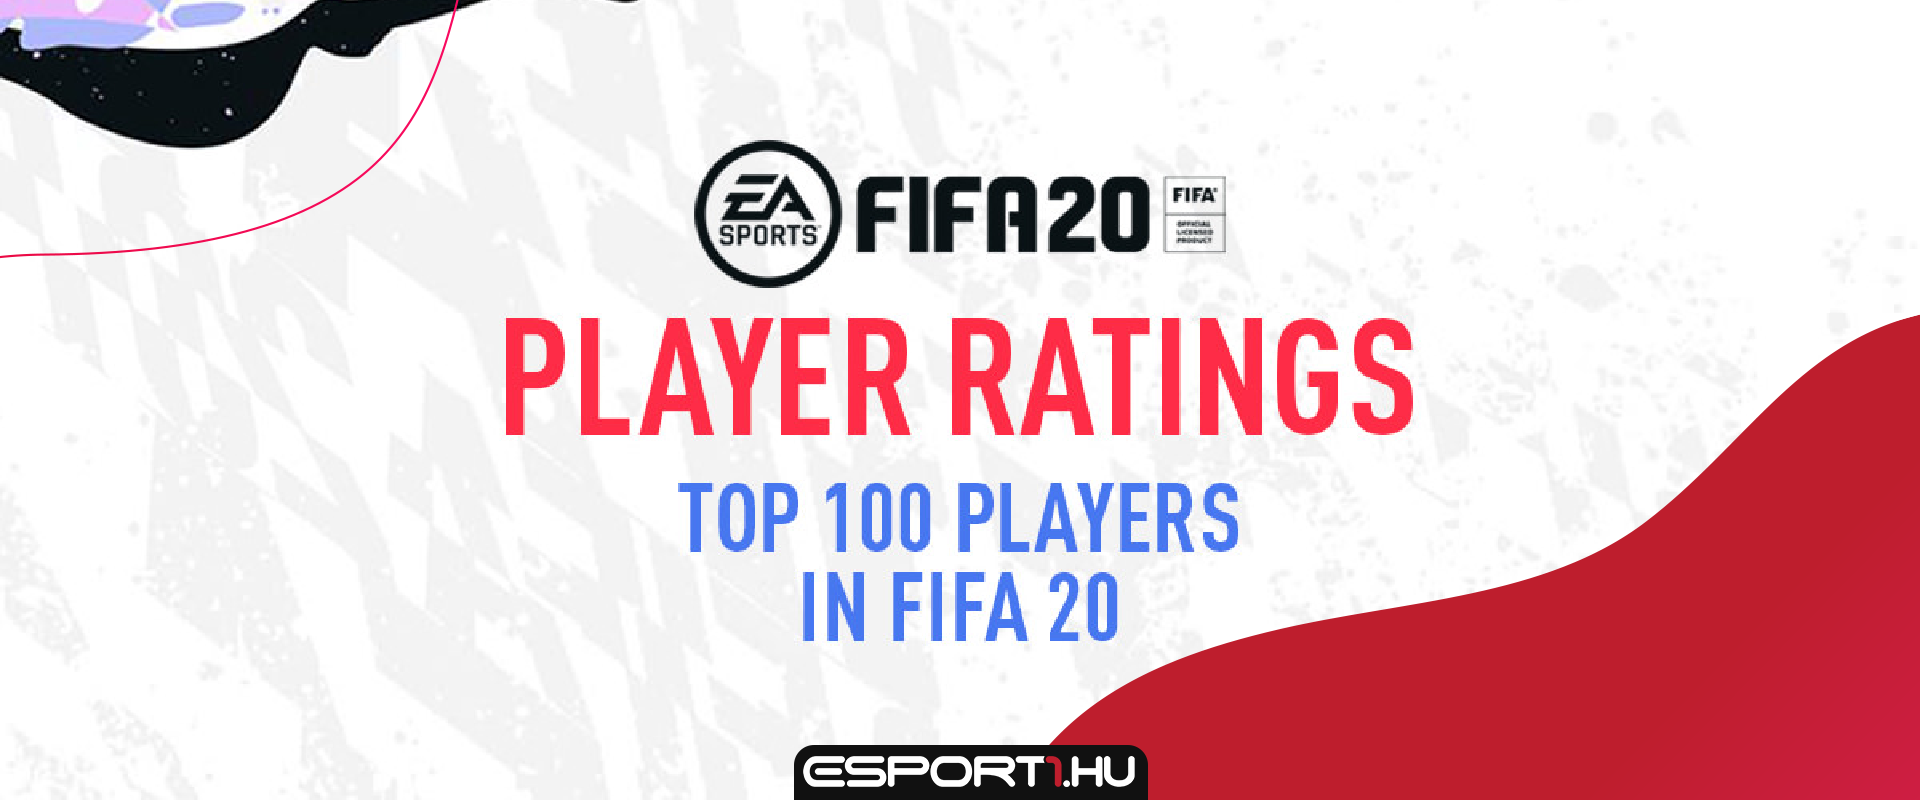 Már nem CR7-é a legjobb lap, megérkezett a FIFA20 Top 100 kártyáinak Ratingje!